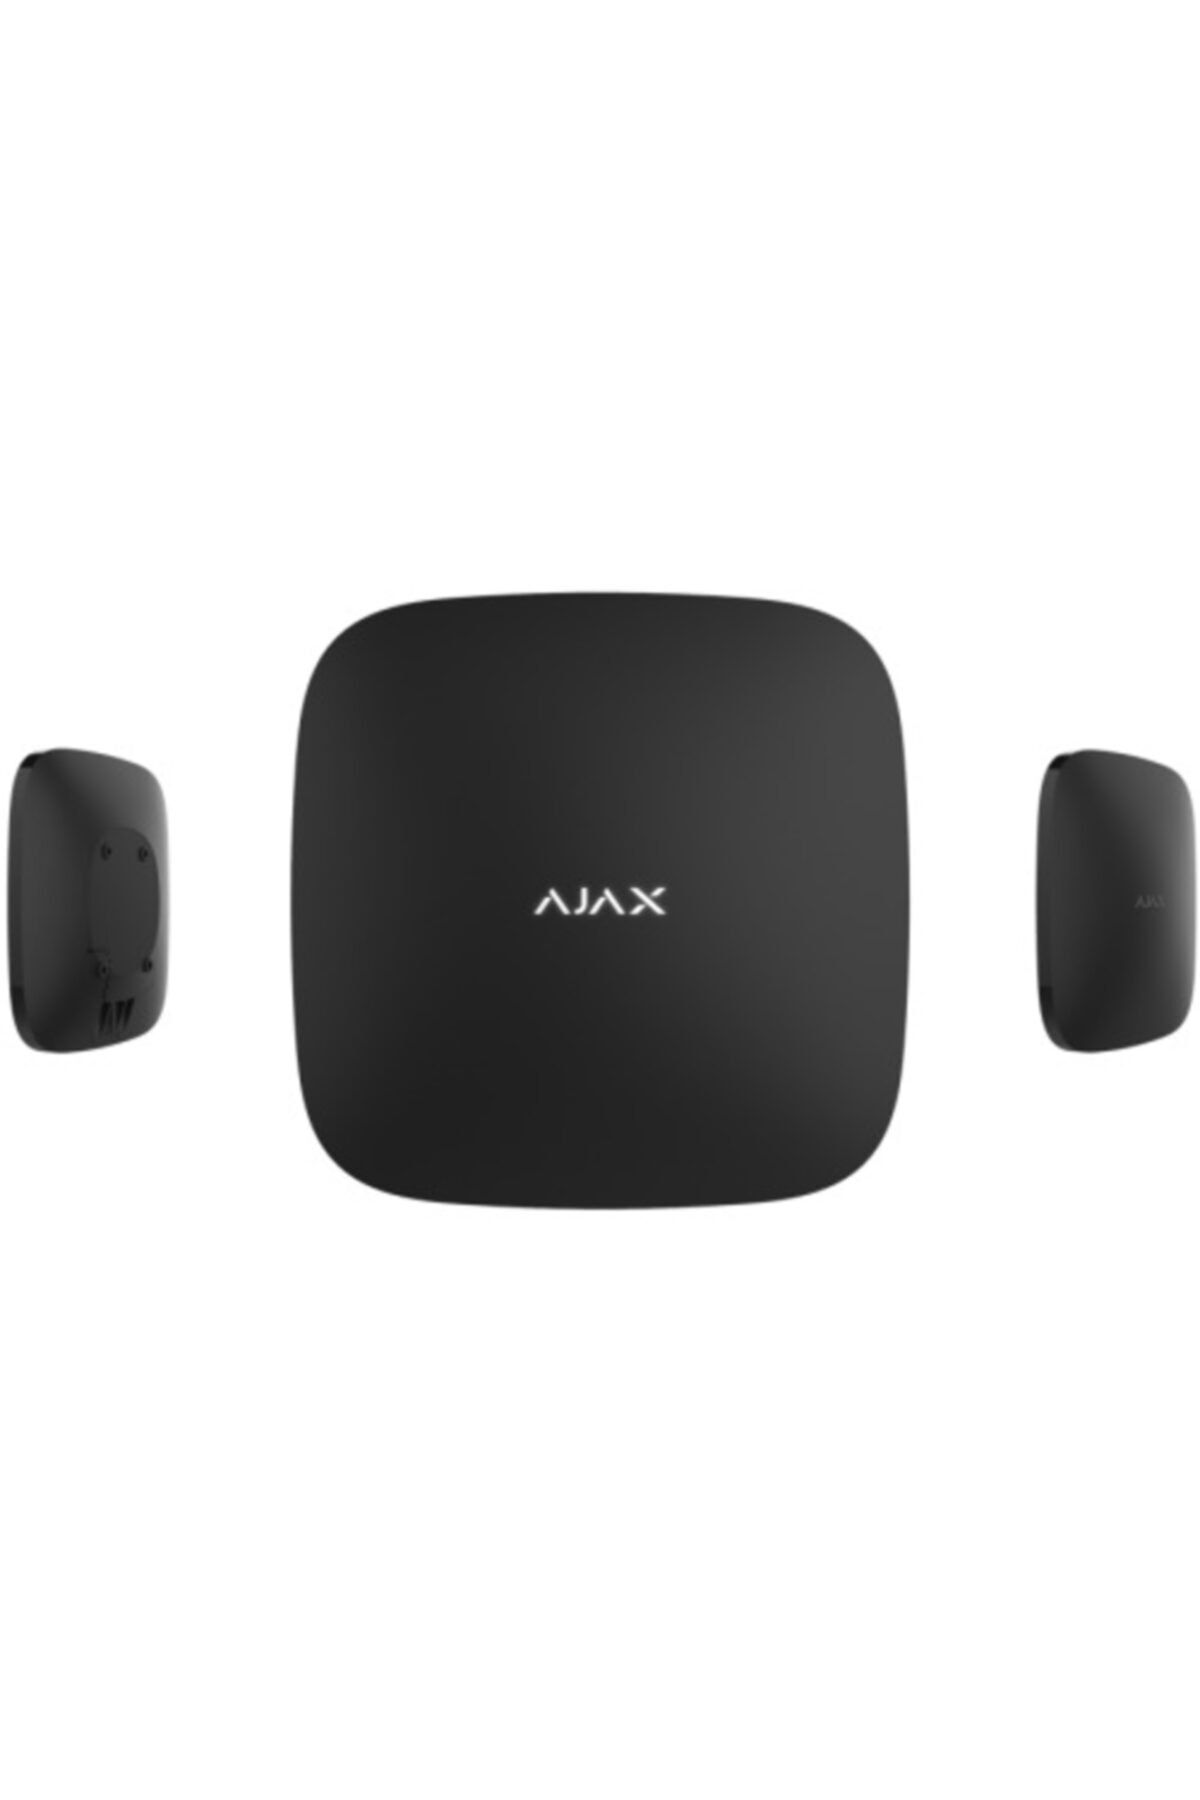 Ajax Kablosuz Görsel Doğrulamalı Gelişmiş Alarm Paneli Hub 2 Plus - Siyah